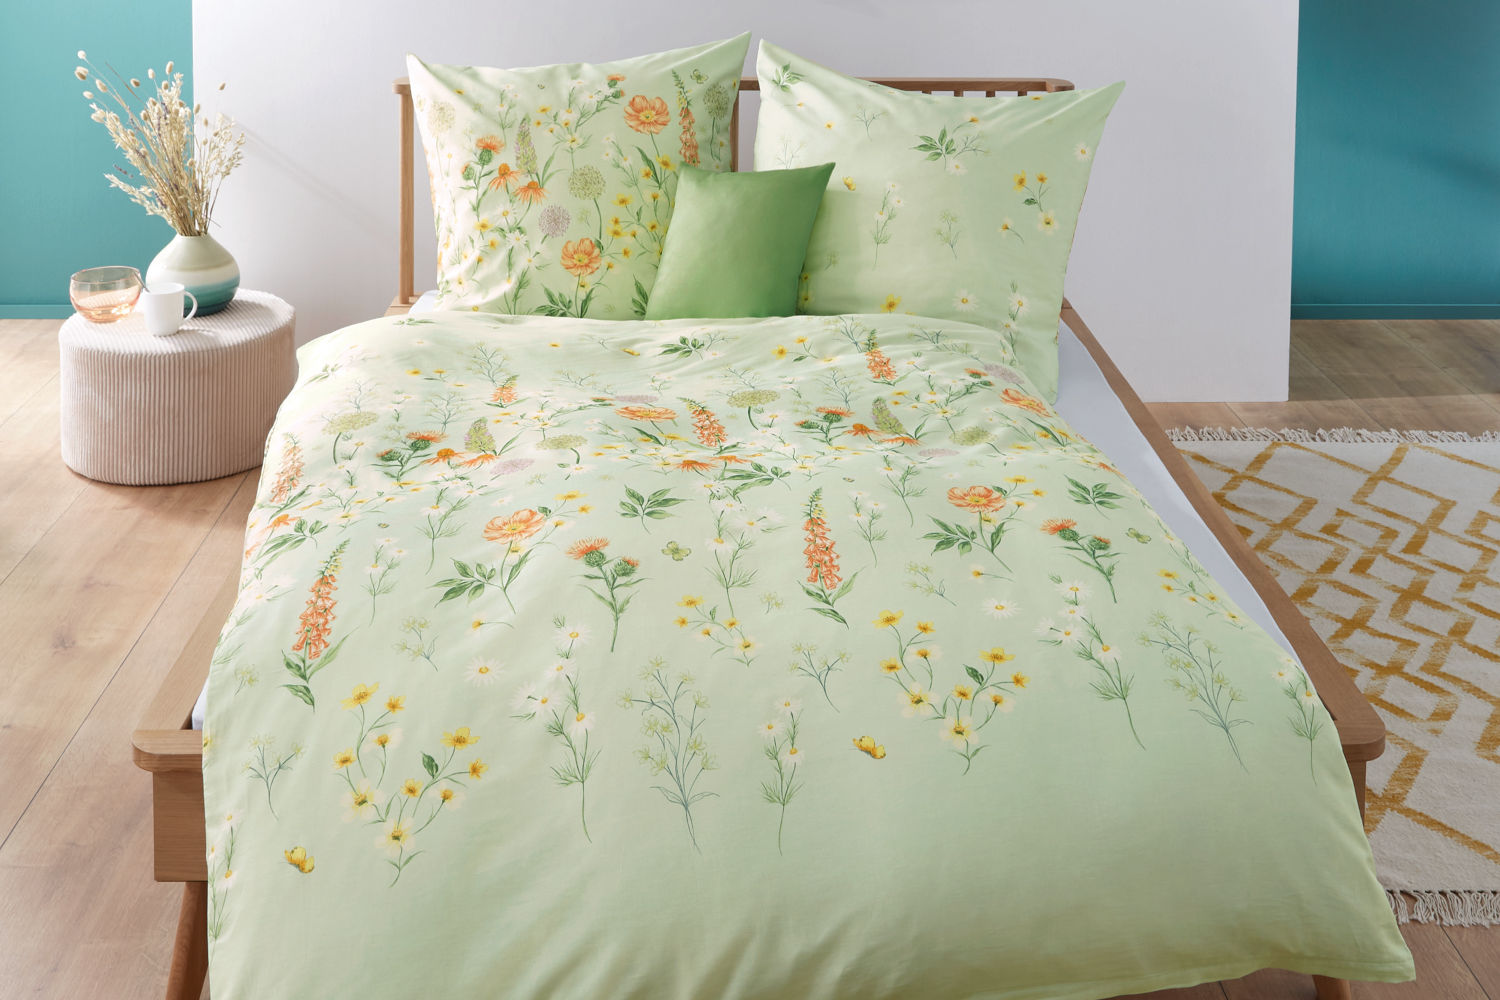 Kaeppel Mako-Satin Wiesenblume Bettwäsche aus 100% Baumwolle, 135x200cm